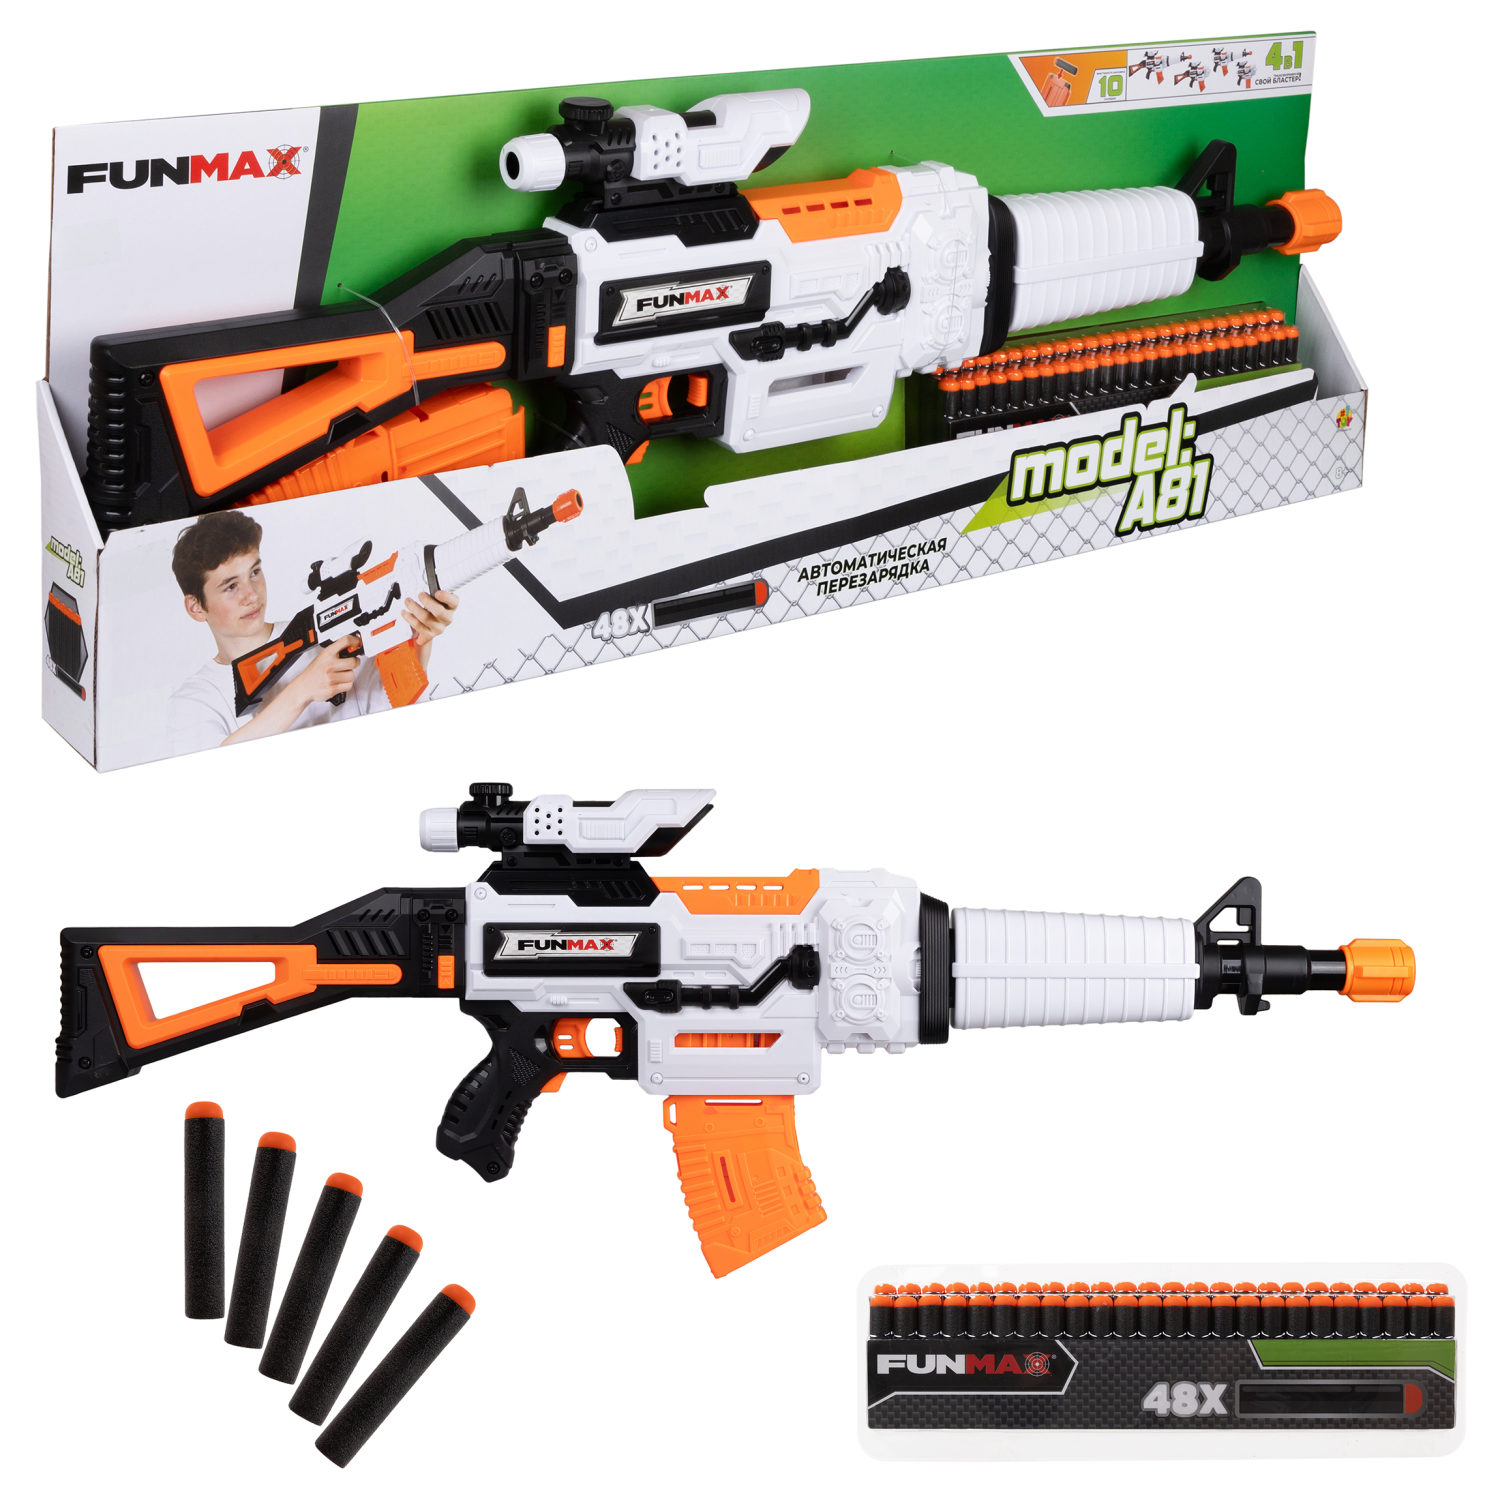 Бластер игрушечный 1toy Funmax A81 электрич, обойма на 12 выстрелов, 48 EVA снарядов набор пуль для игрушечного бластера eva снарядов 1toy funmax 24 шт блистер